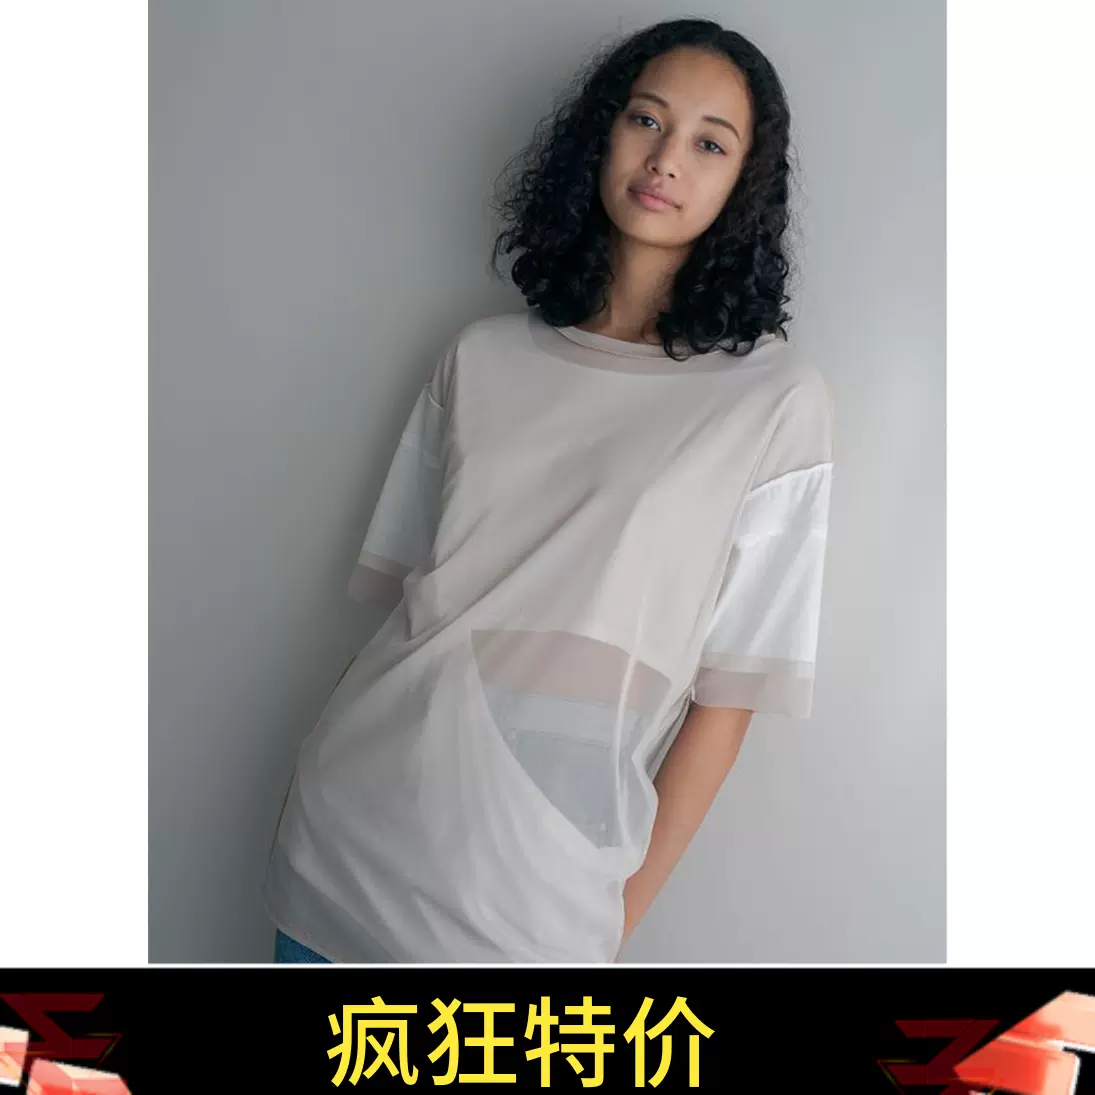 折扣日本代购perverze Half Layered Top双面穿短袖T恤女款日本制-Taobao